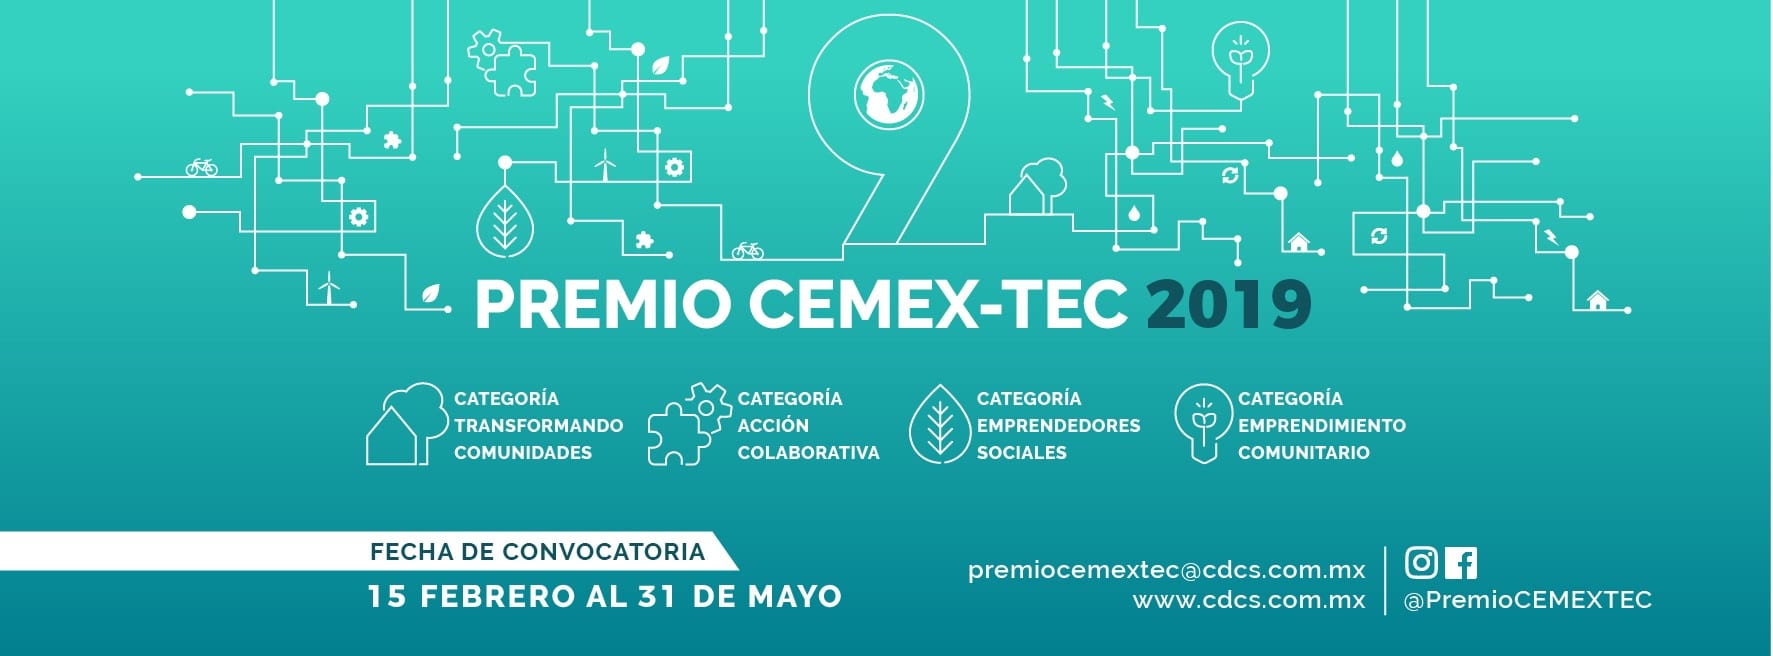 El premio CEMEX-Tec lanza su edición 2019 con dos nuevas categorías